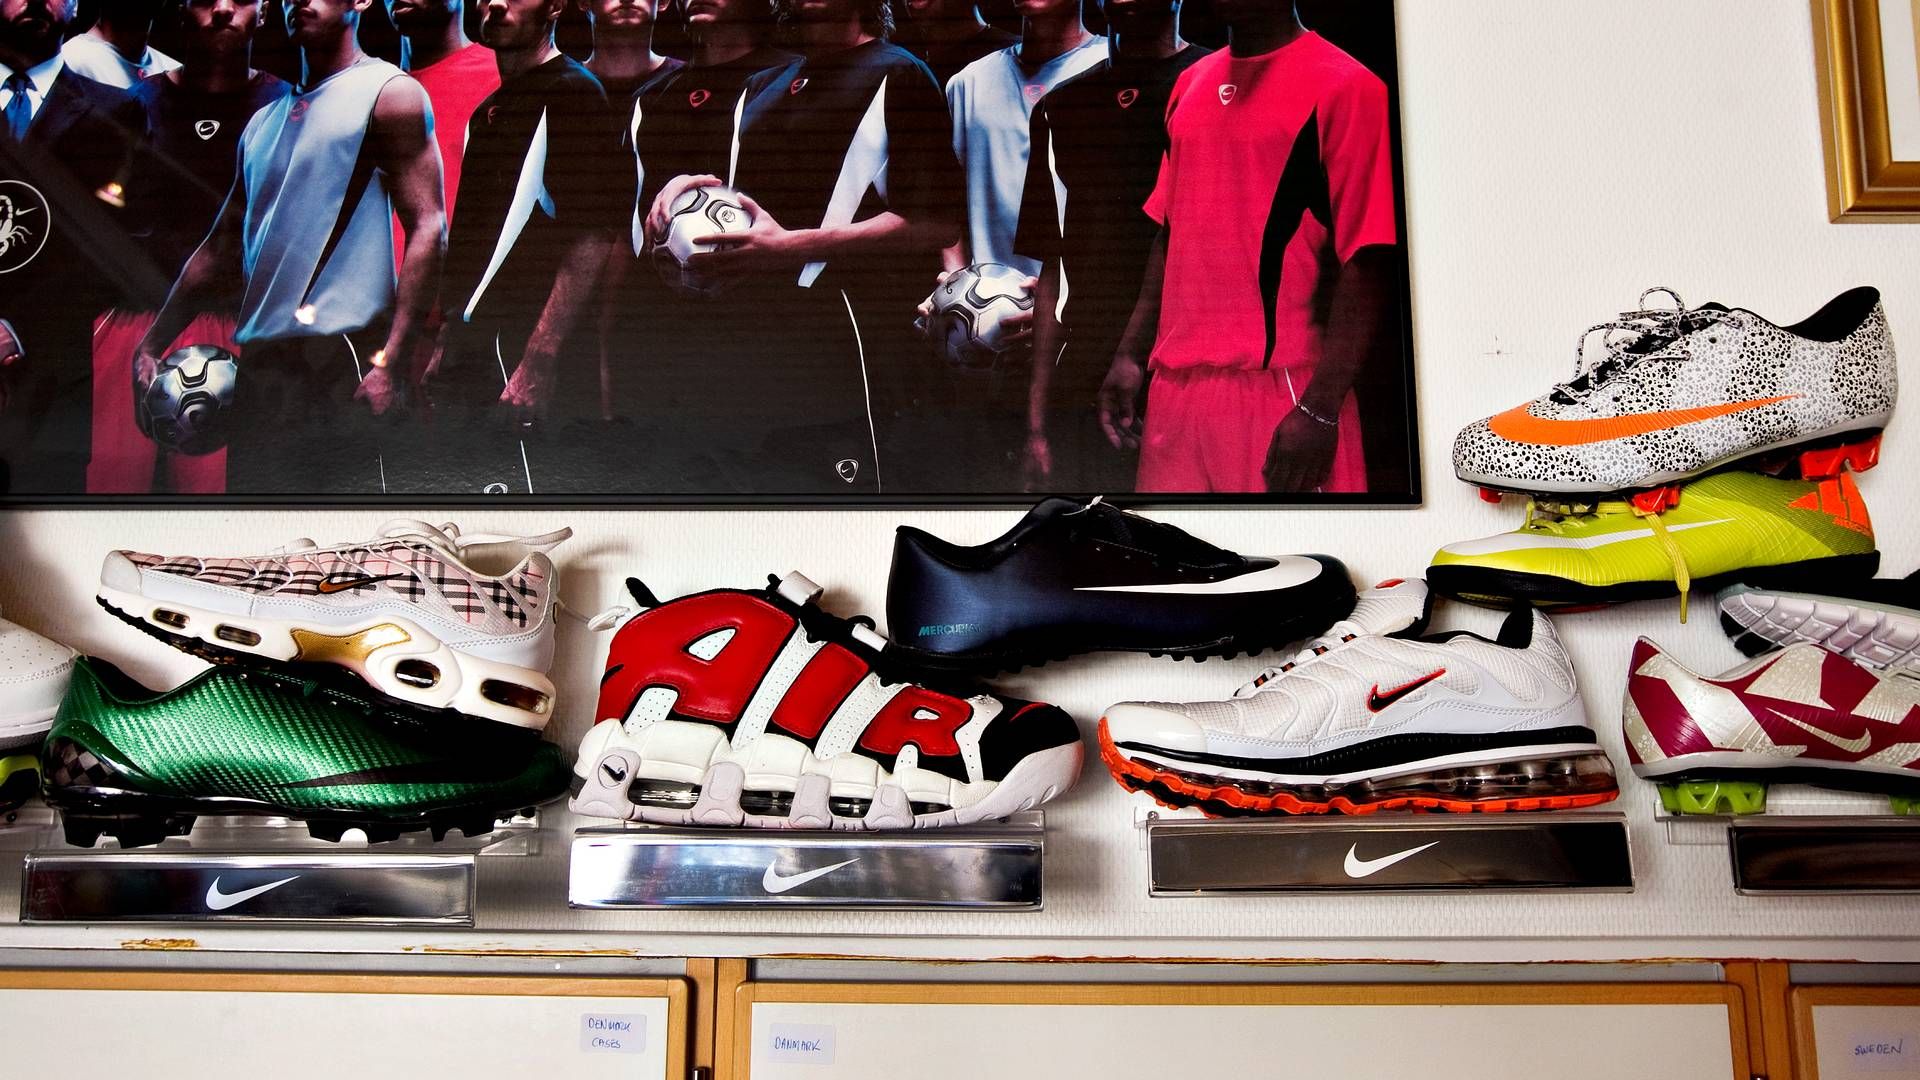 Falske billige efterligninger florerer af mange mærkevarer som fx Nike. | Foto: Jacob Ehrbahn